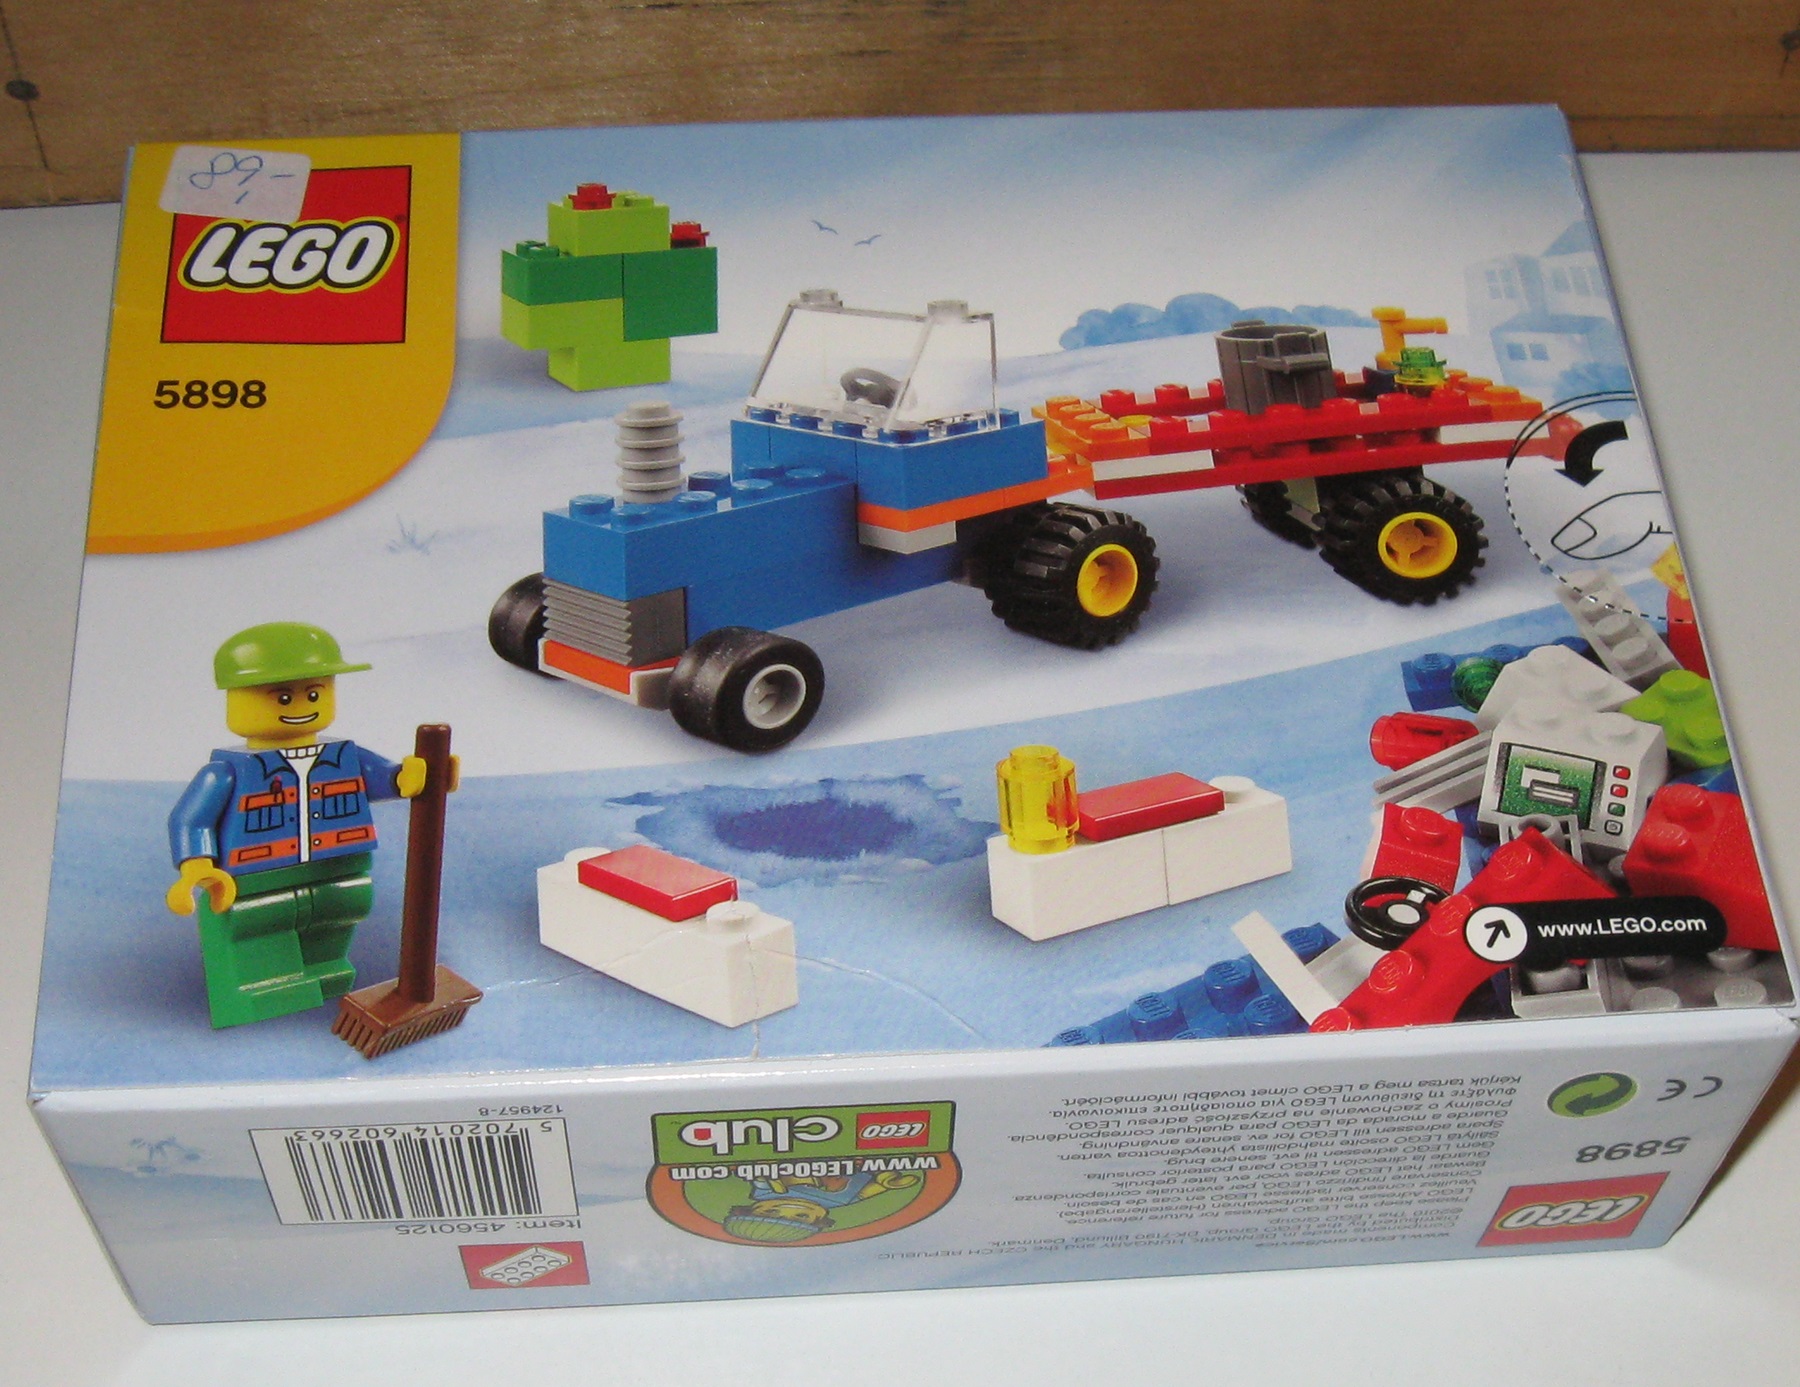 0010 Lego 5898